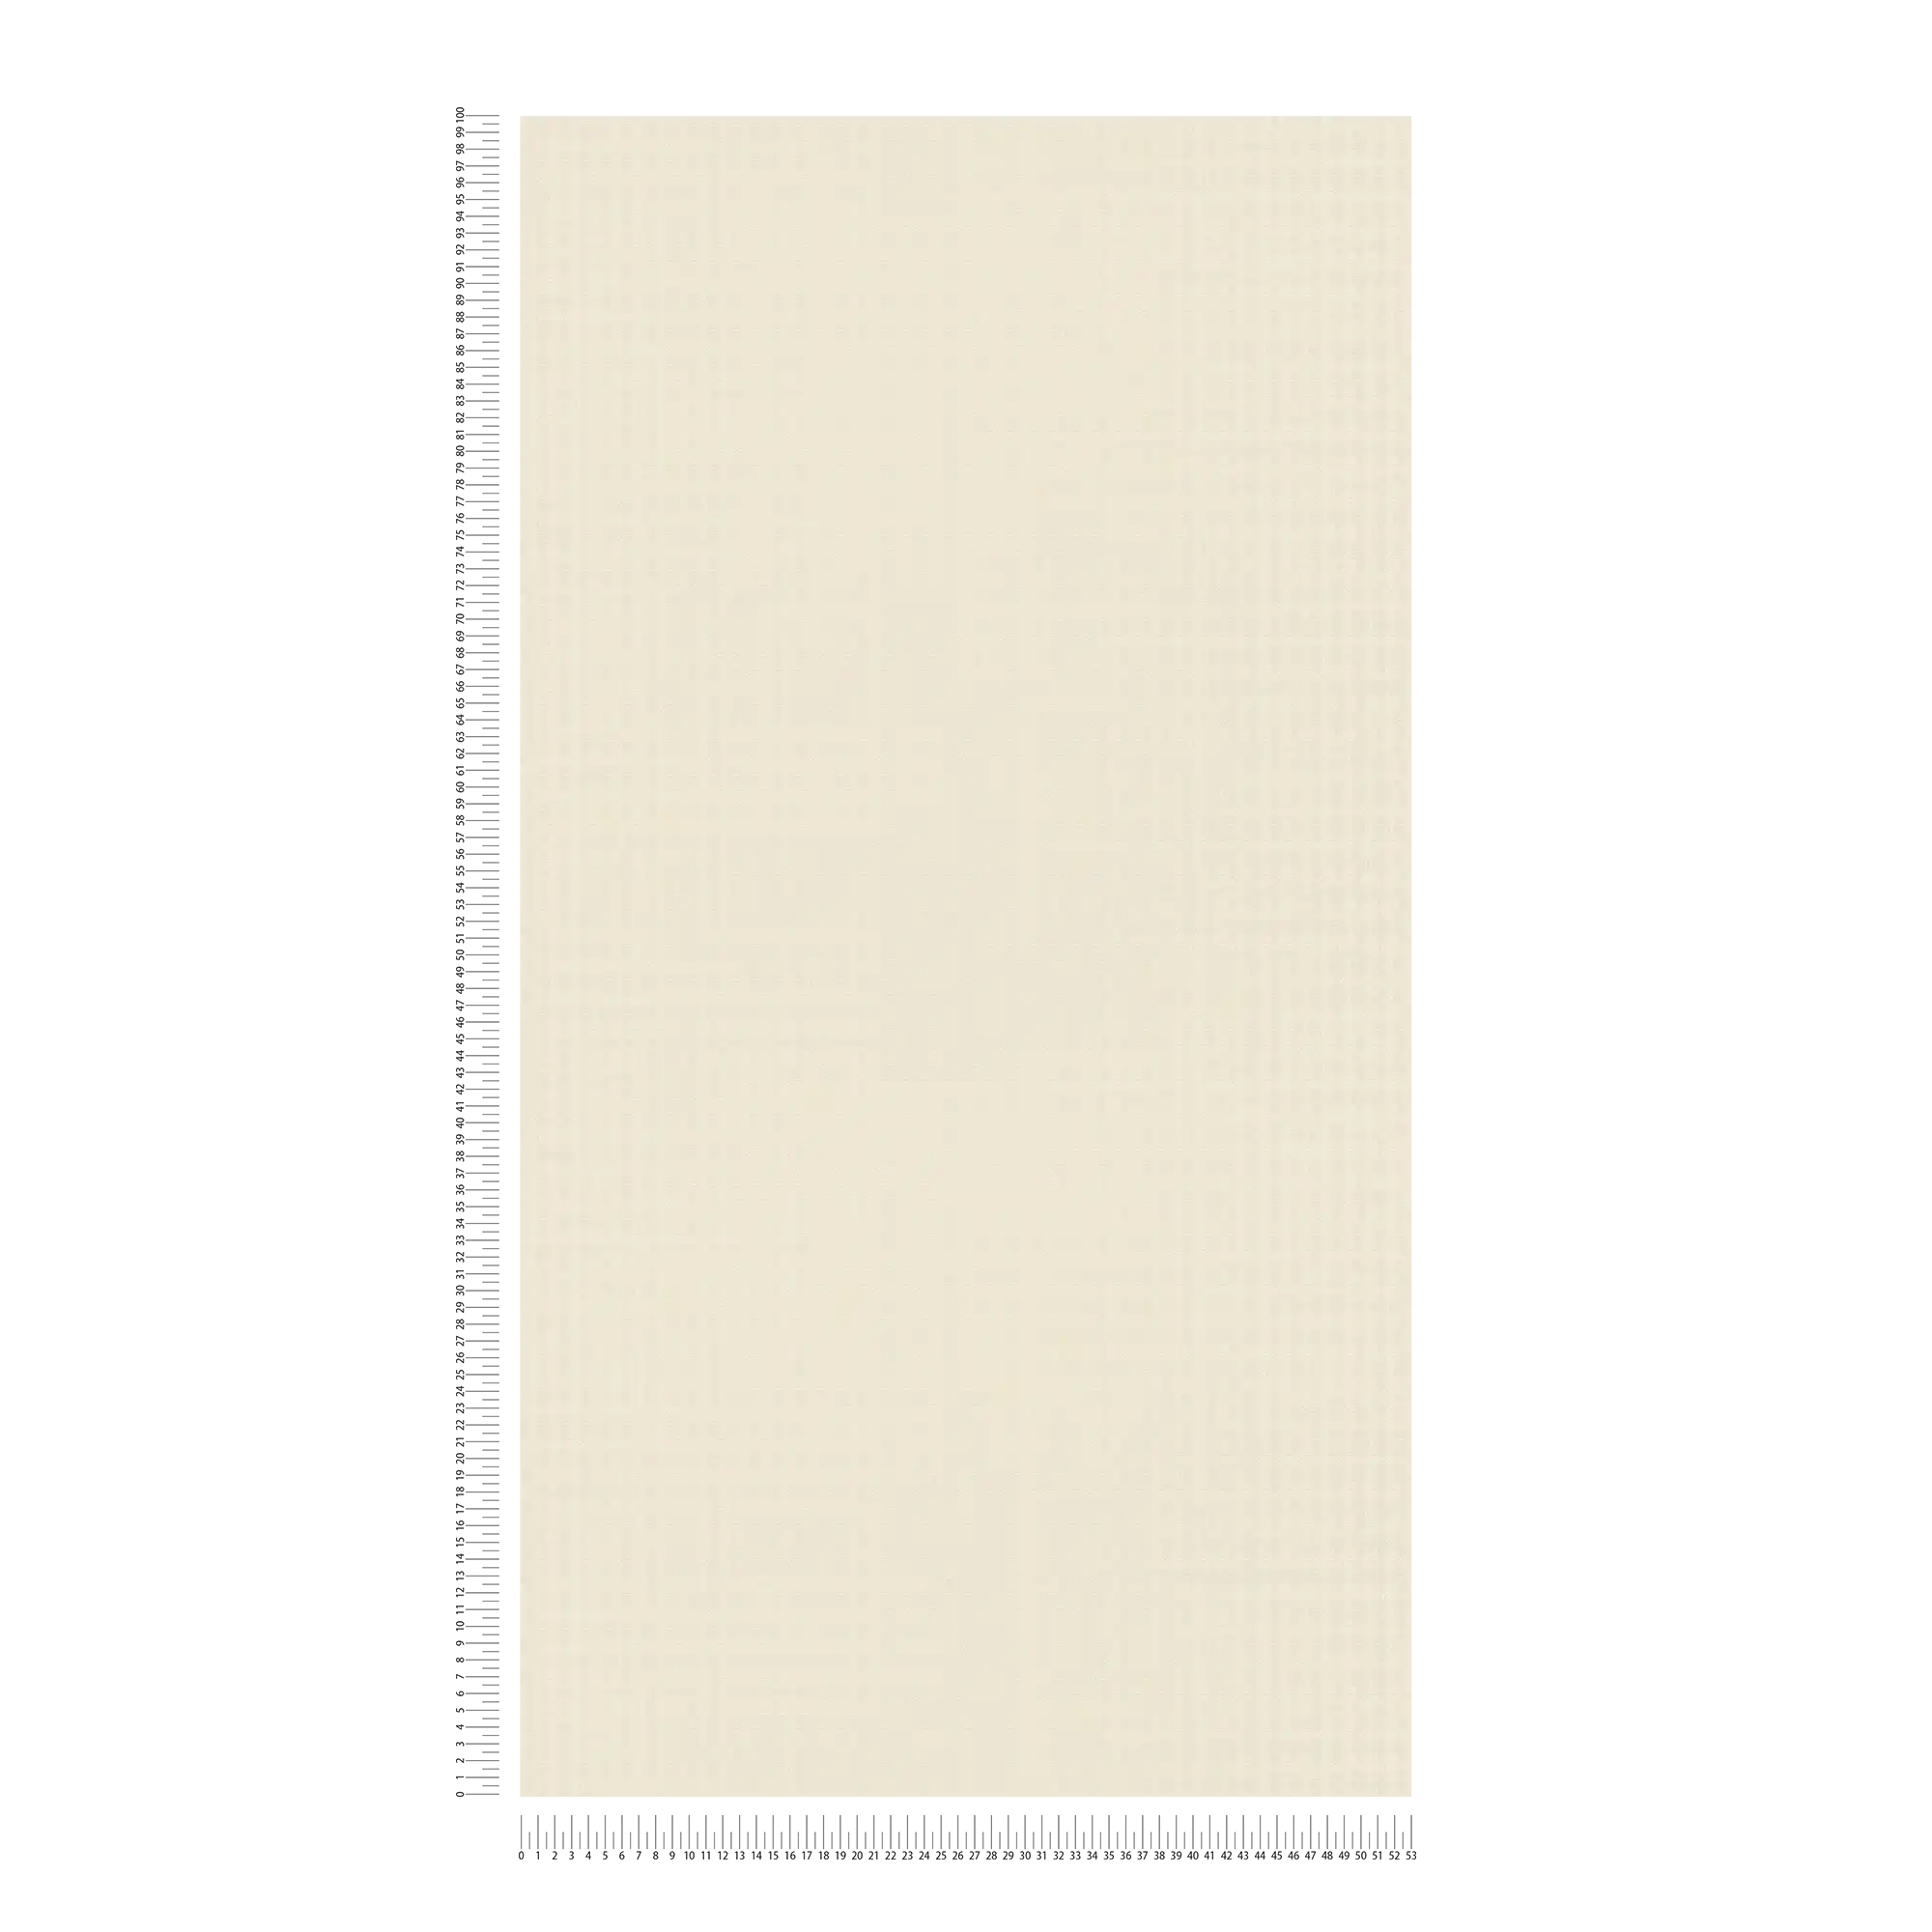             wallpaper Karl LAGERFELD plain with profile pattern - beige
        